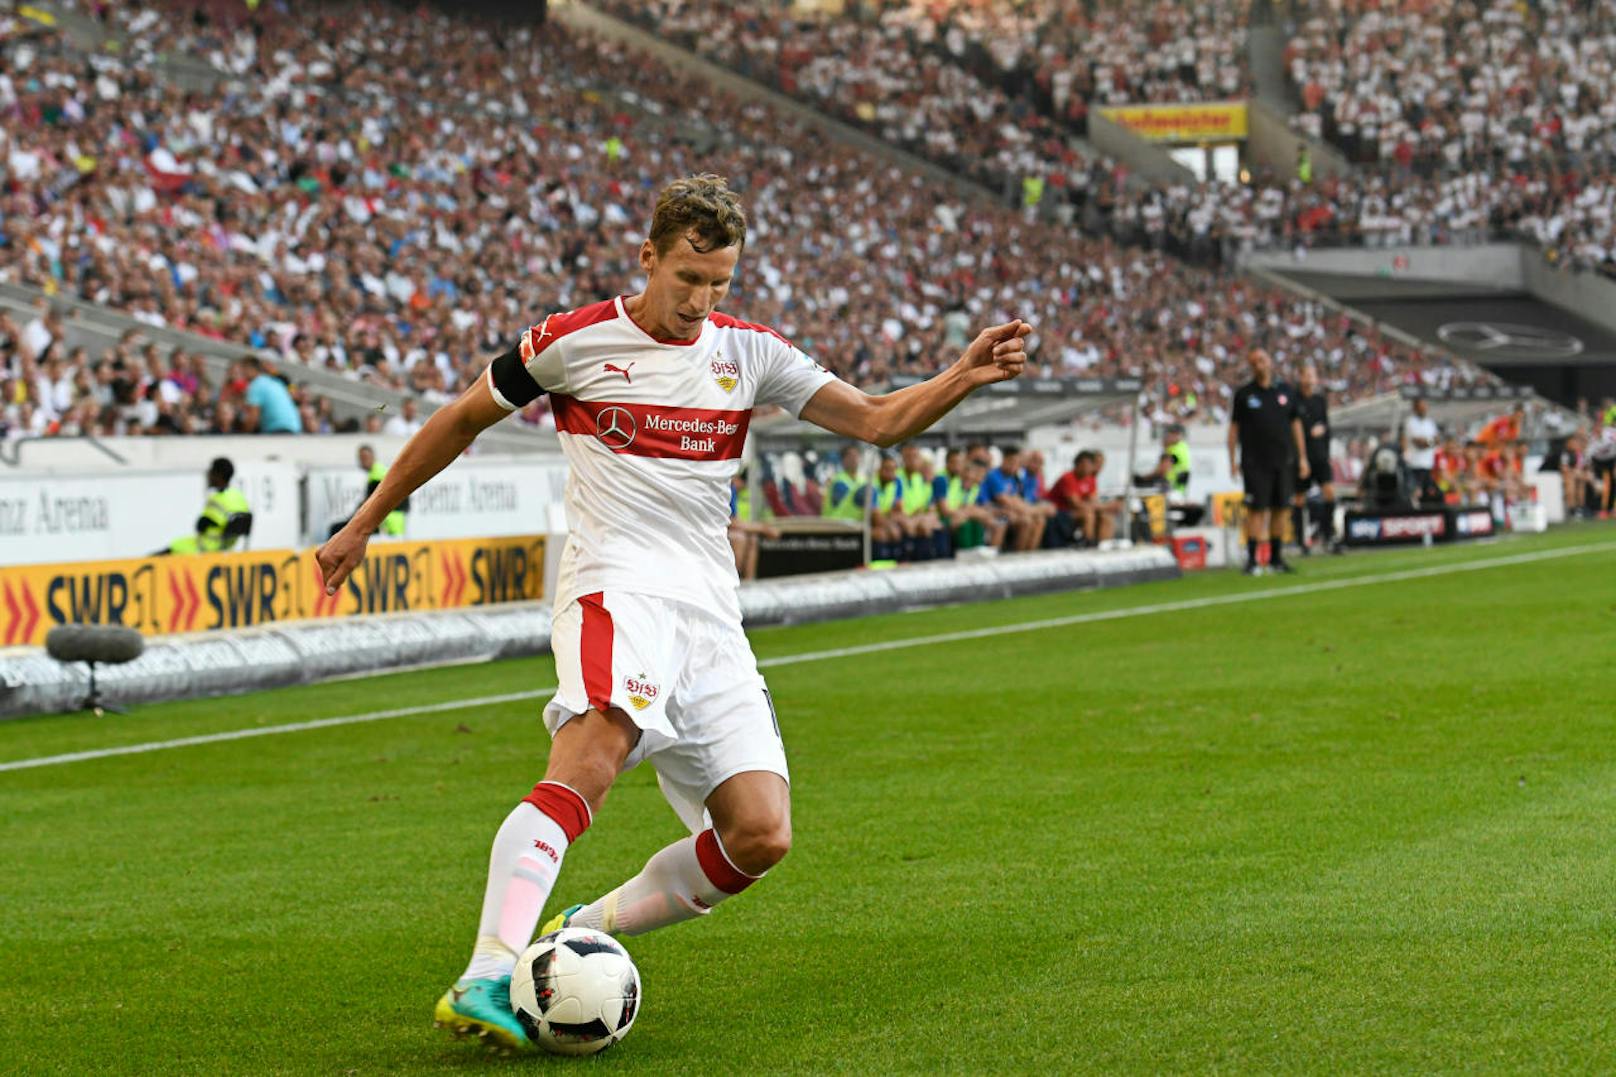 VERTEIDIGUNG: Florian Klein
45 Länderspiele bestritt der Rechtsverteidiger für Österreich, doch nun verlängerte sein Klub VfB Stuttgart den auslaufenden Vertrag nicht mehr.